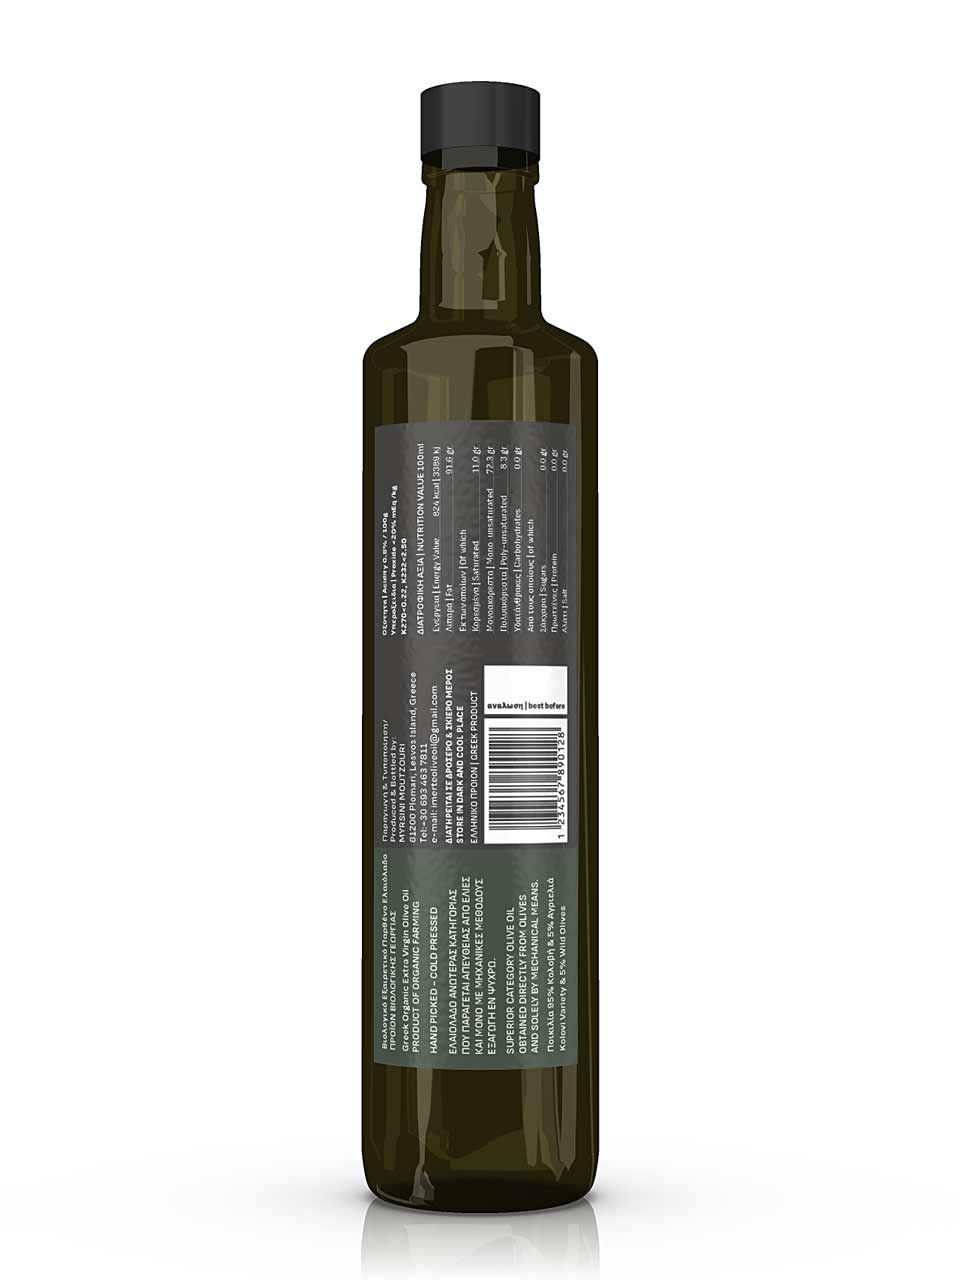 Bio Organic Olive Oil Label Design. NO IDEA. Branding Graphic Design Agency